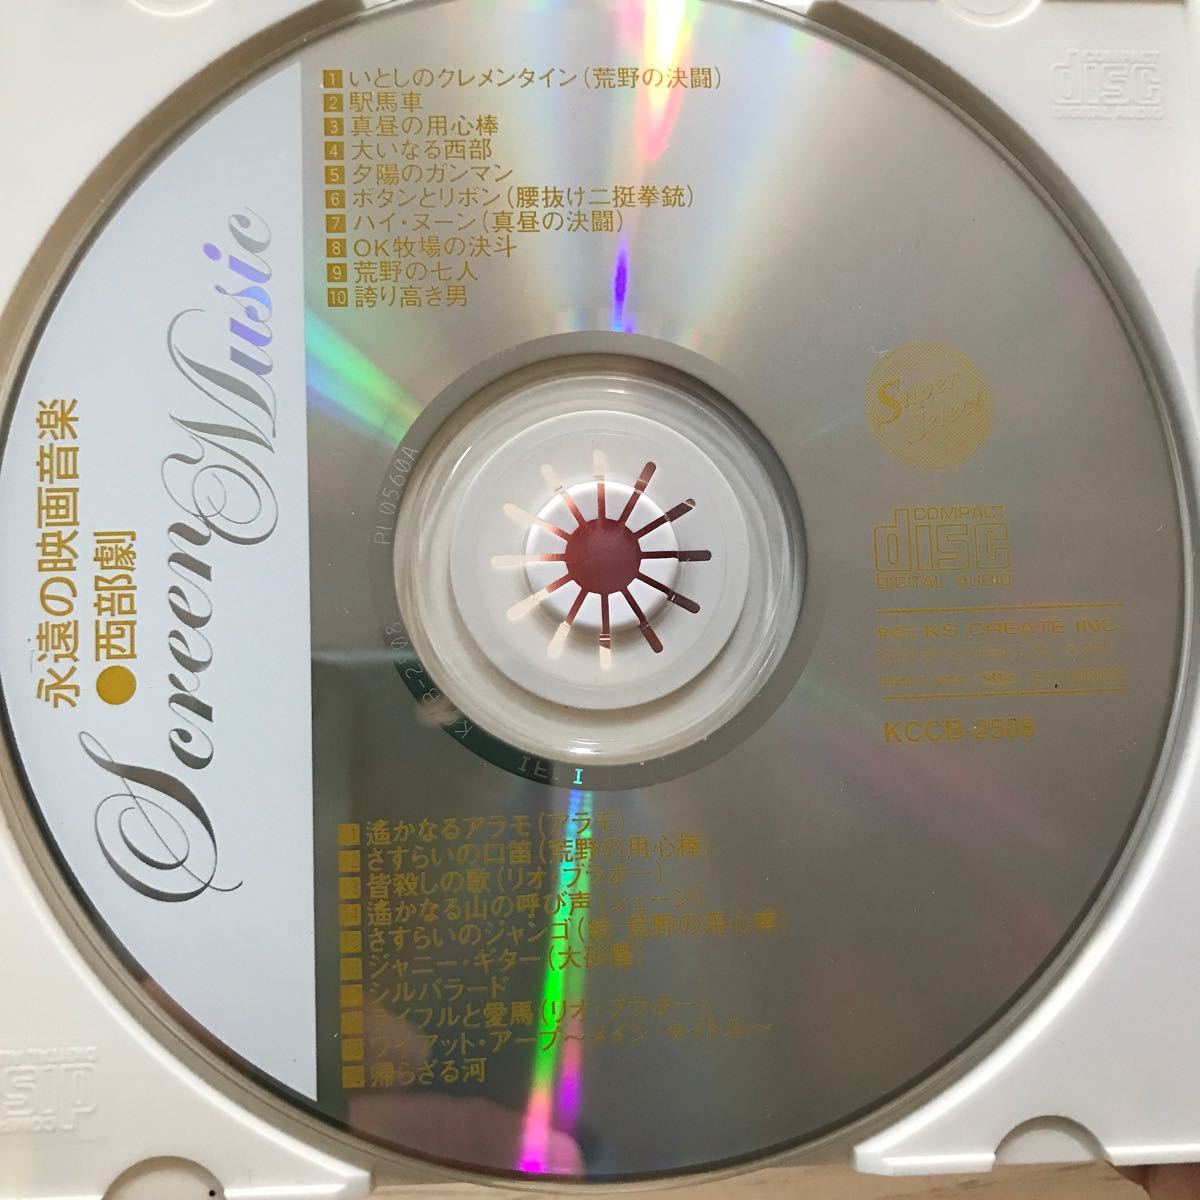 Yahoo!オークション -「西部劇」(CD) の落札相場・落札価格